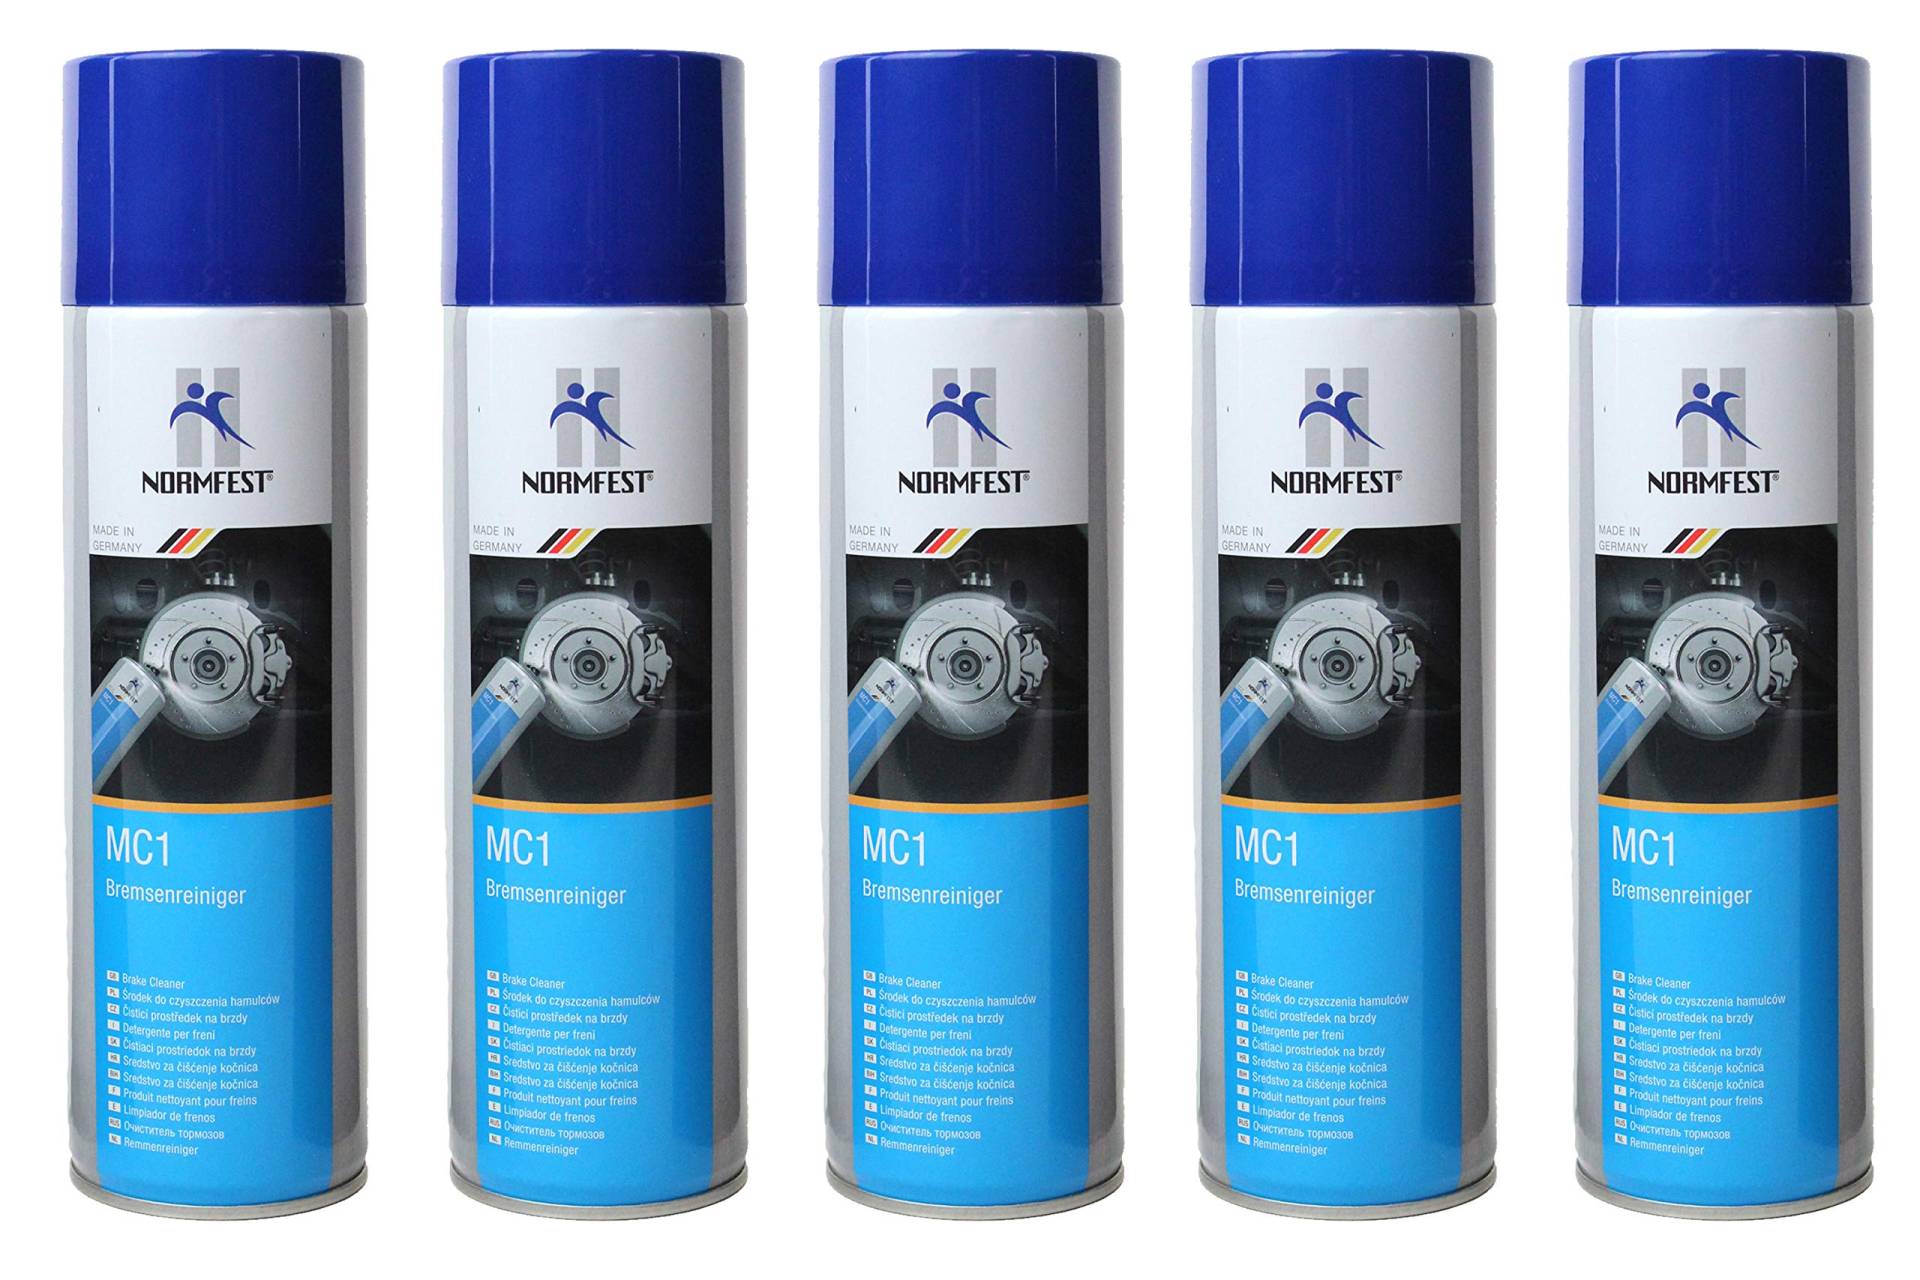 5x Normfest MC1 Bremsenreiniger Spray Entfetter Aerosol Inhalt je 500ml, gesamt 2500 ml) von BISOMO